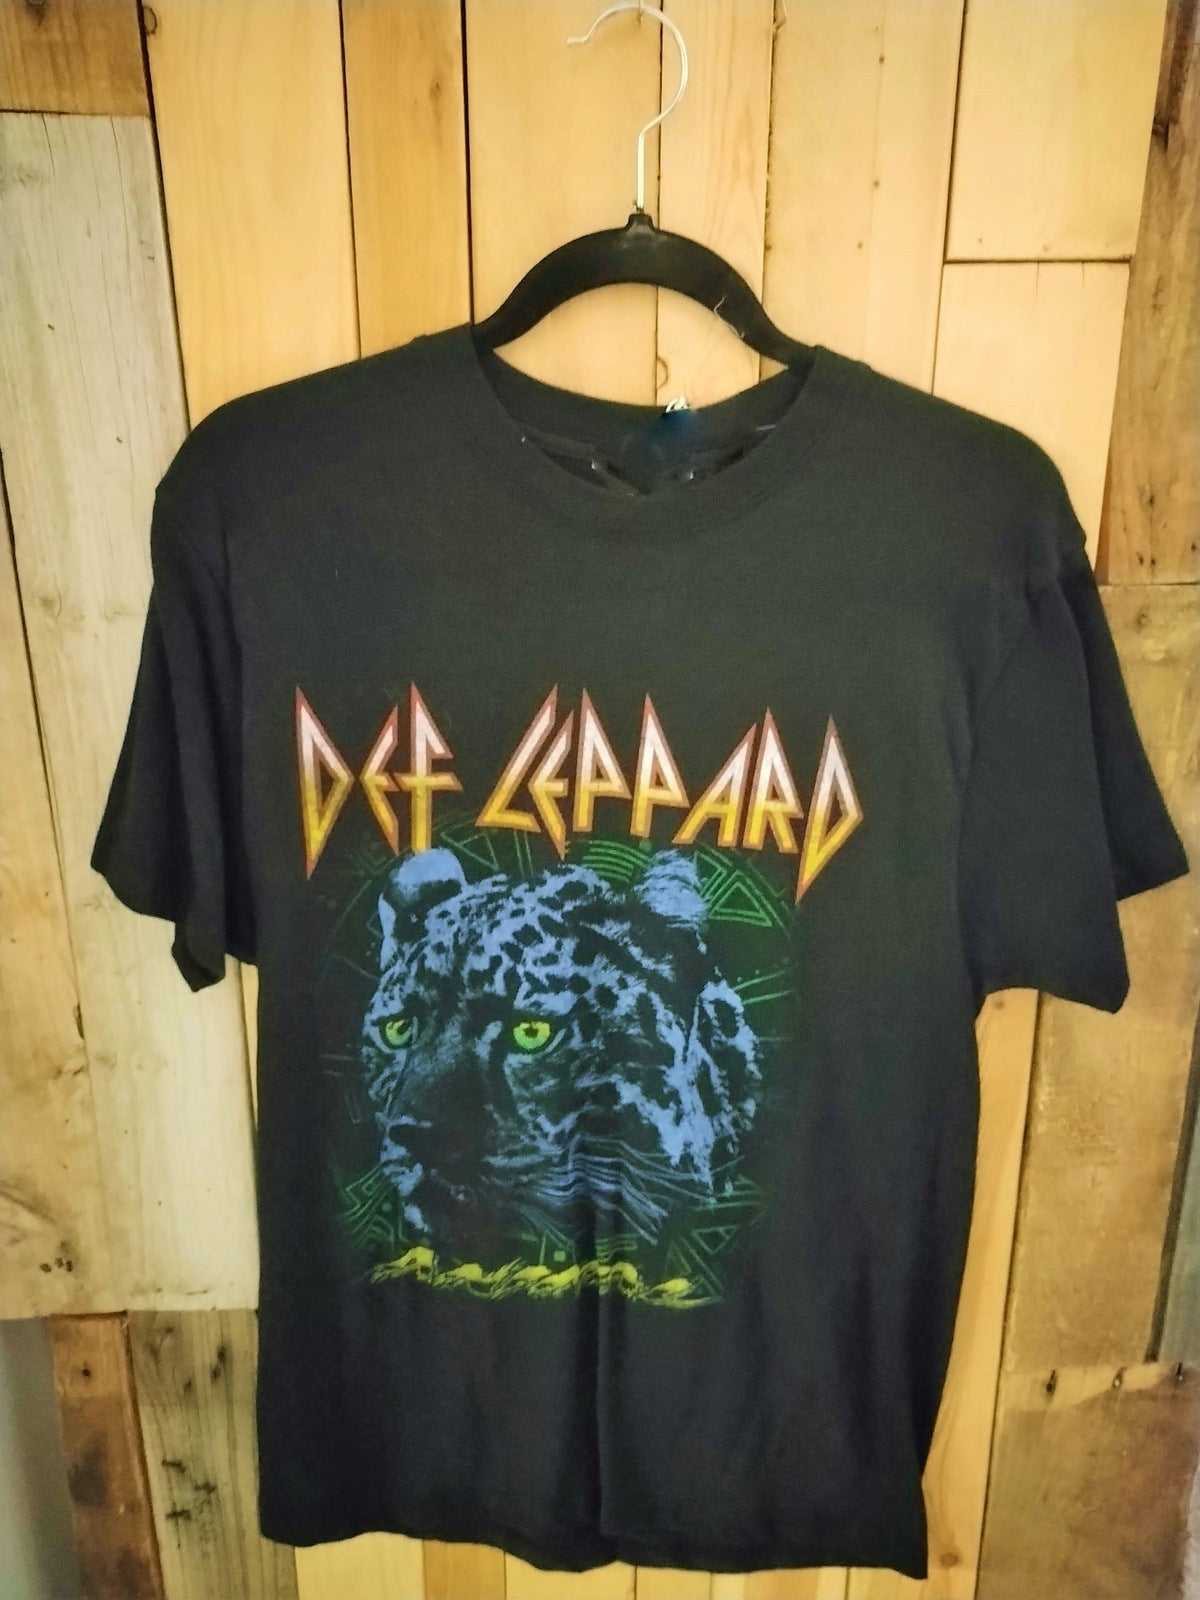 Def Leppard Official Merchandise T Shirt Size Medium